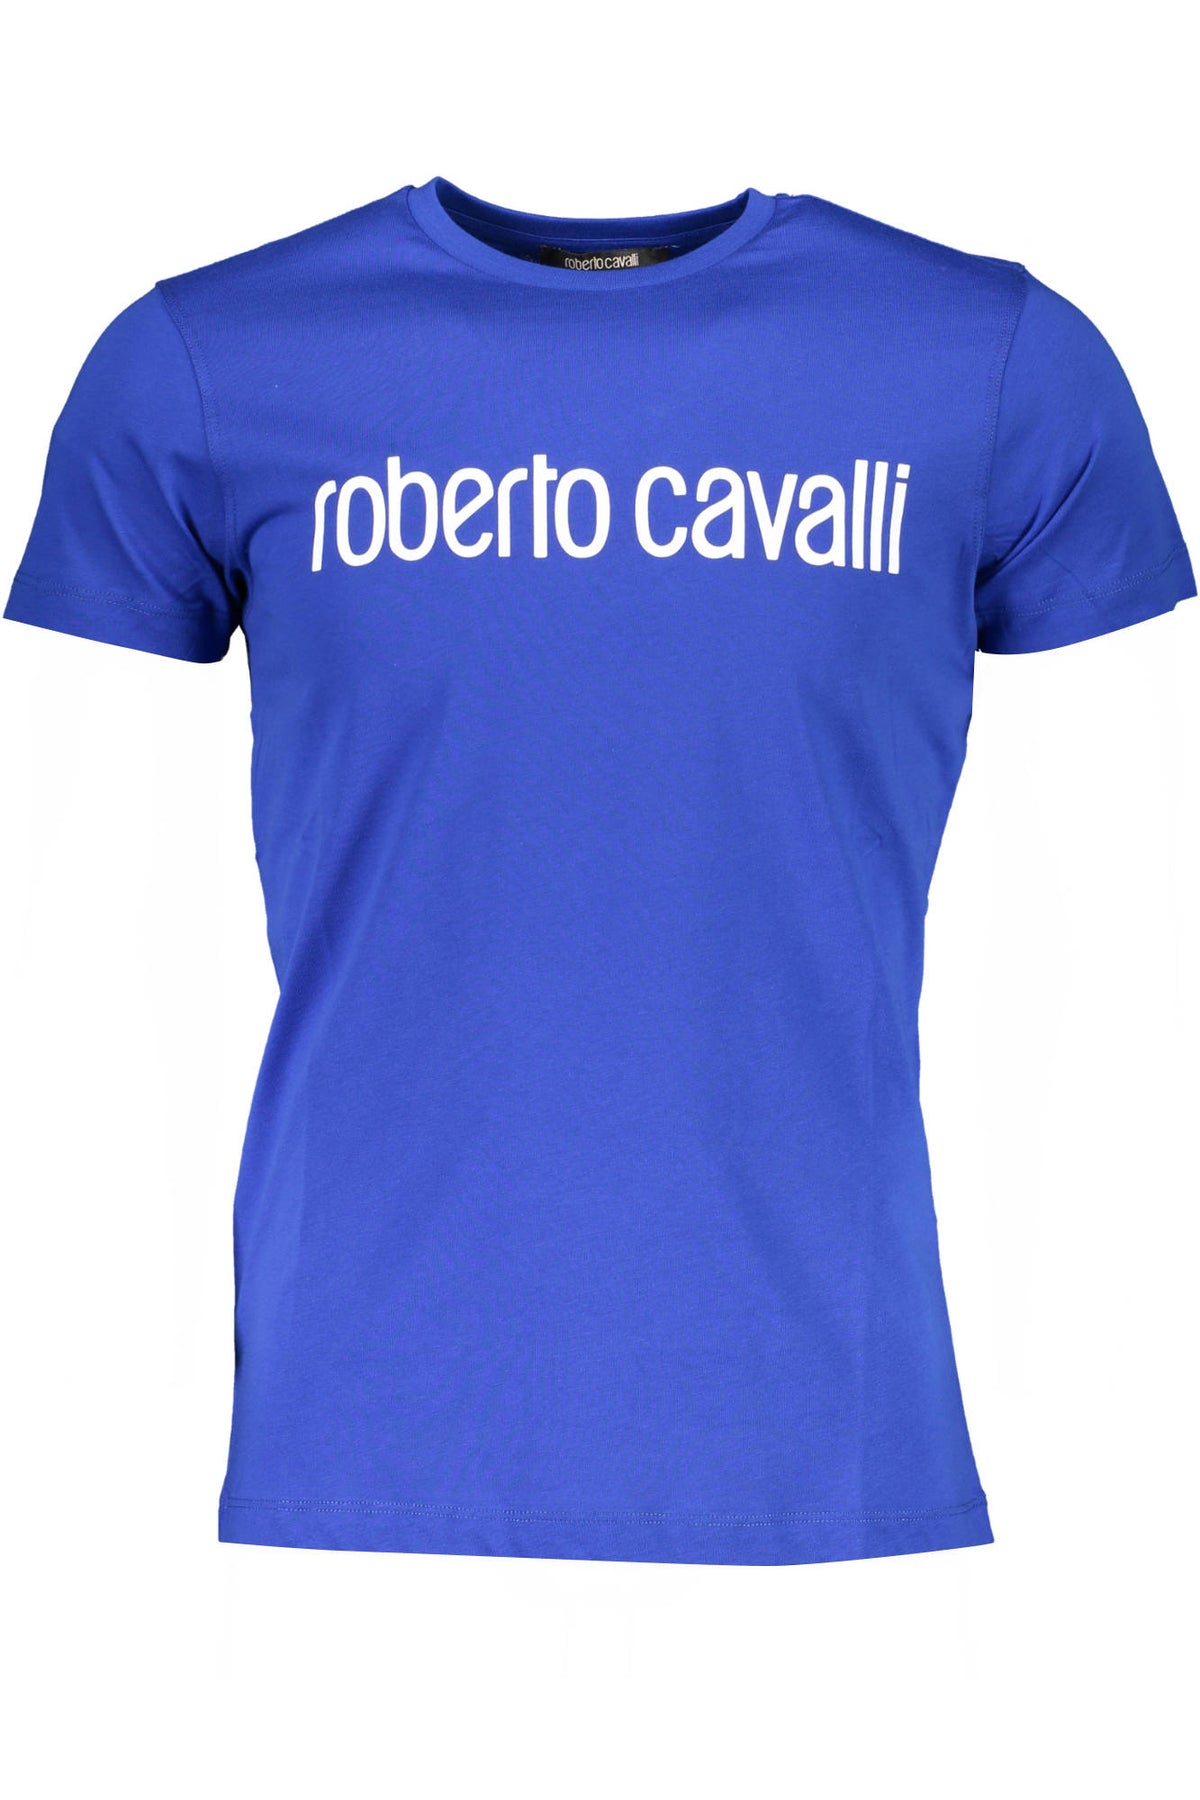 ROBERTO CAVALLI Herren T-Shirt Shirt Sweatshirt Oberteil mit Rundhalsausschnitt, kurzärmlig